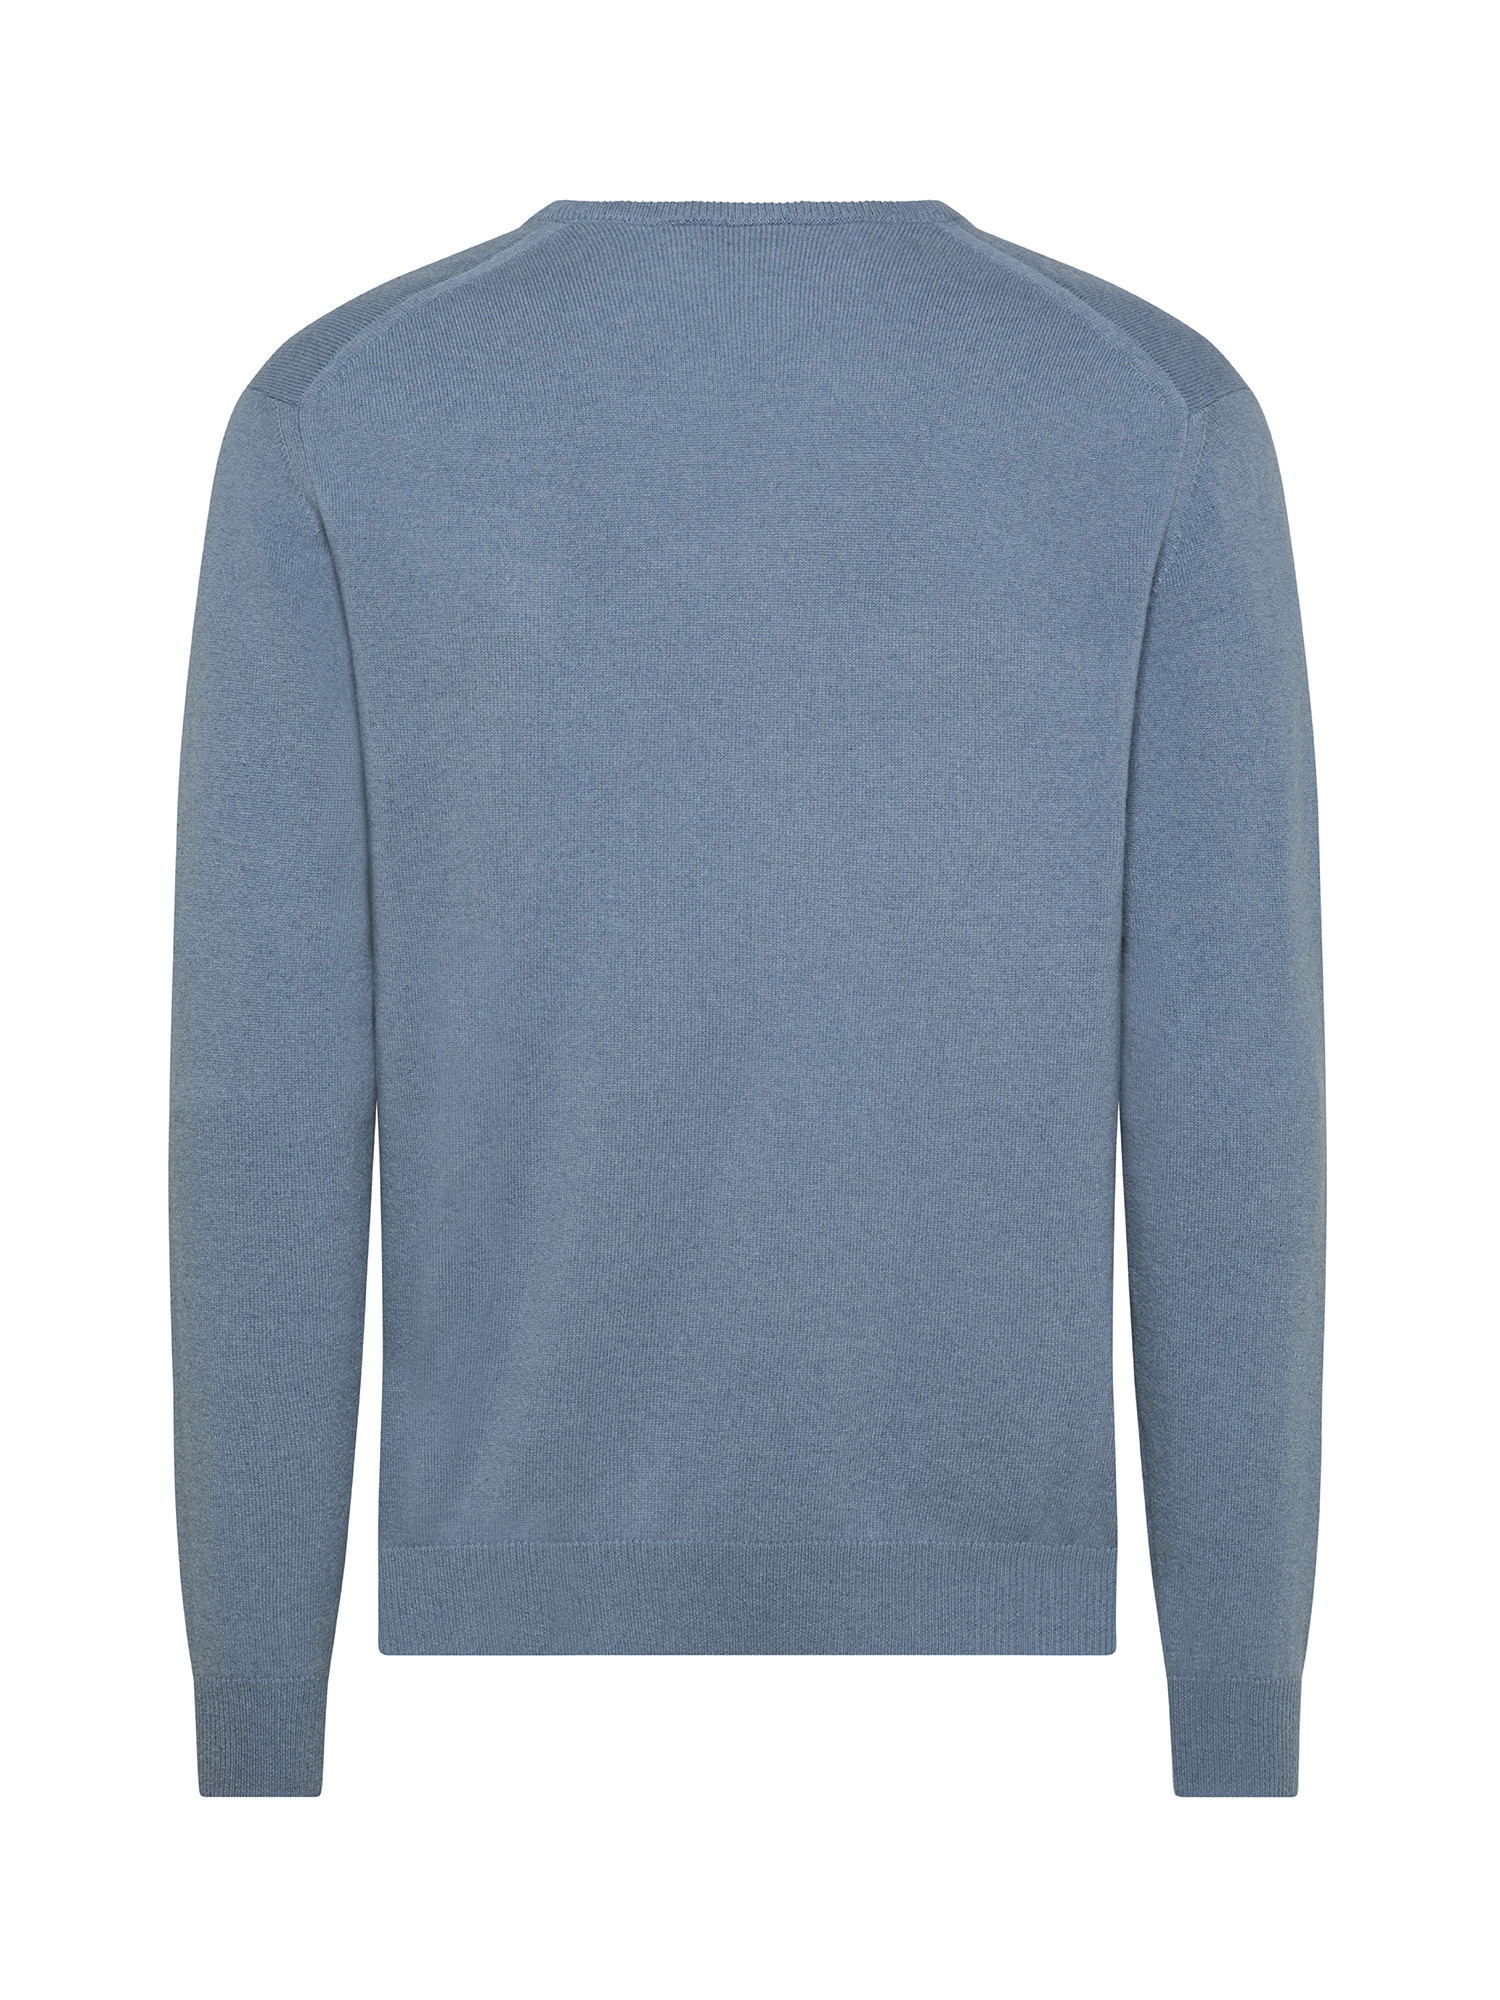 V-neck pullover in pure cashmere, Light Blue, large image number 1